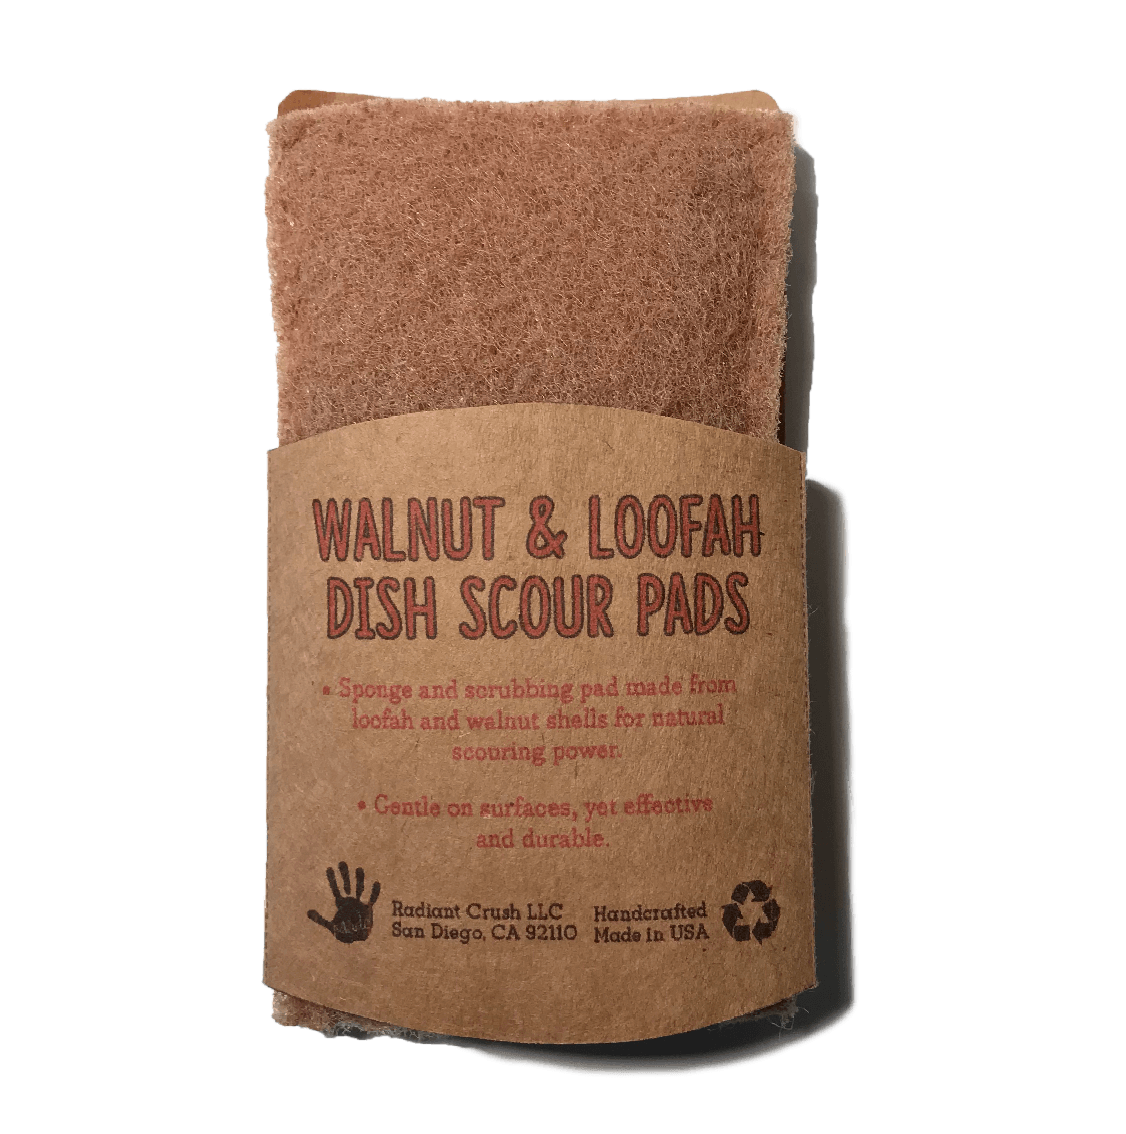 Walnut & Loofah Dish Scour Pad - Radiant Crush